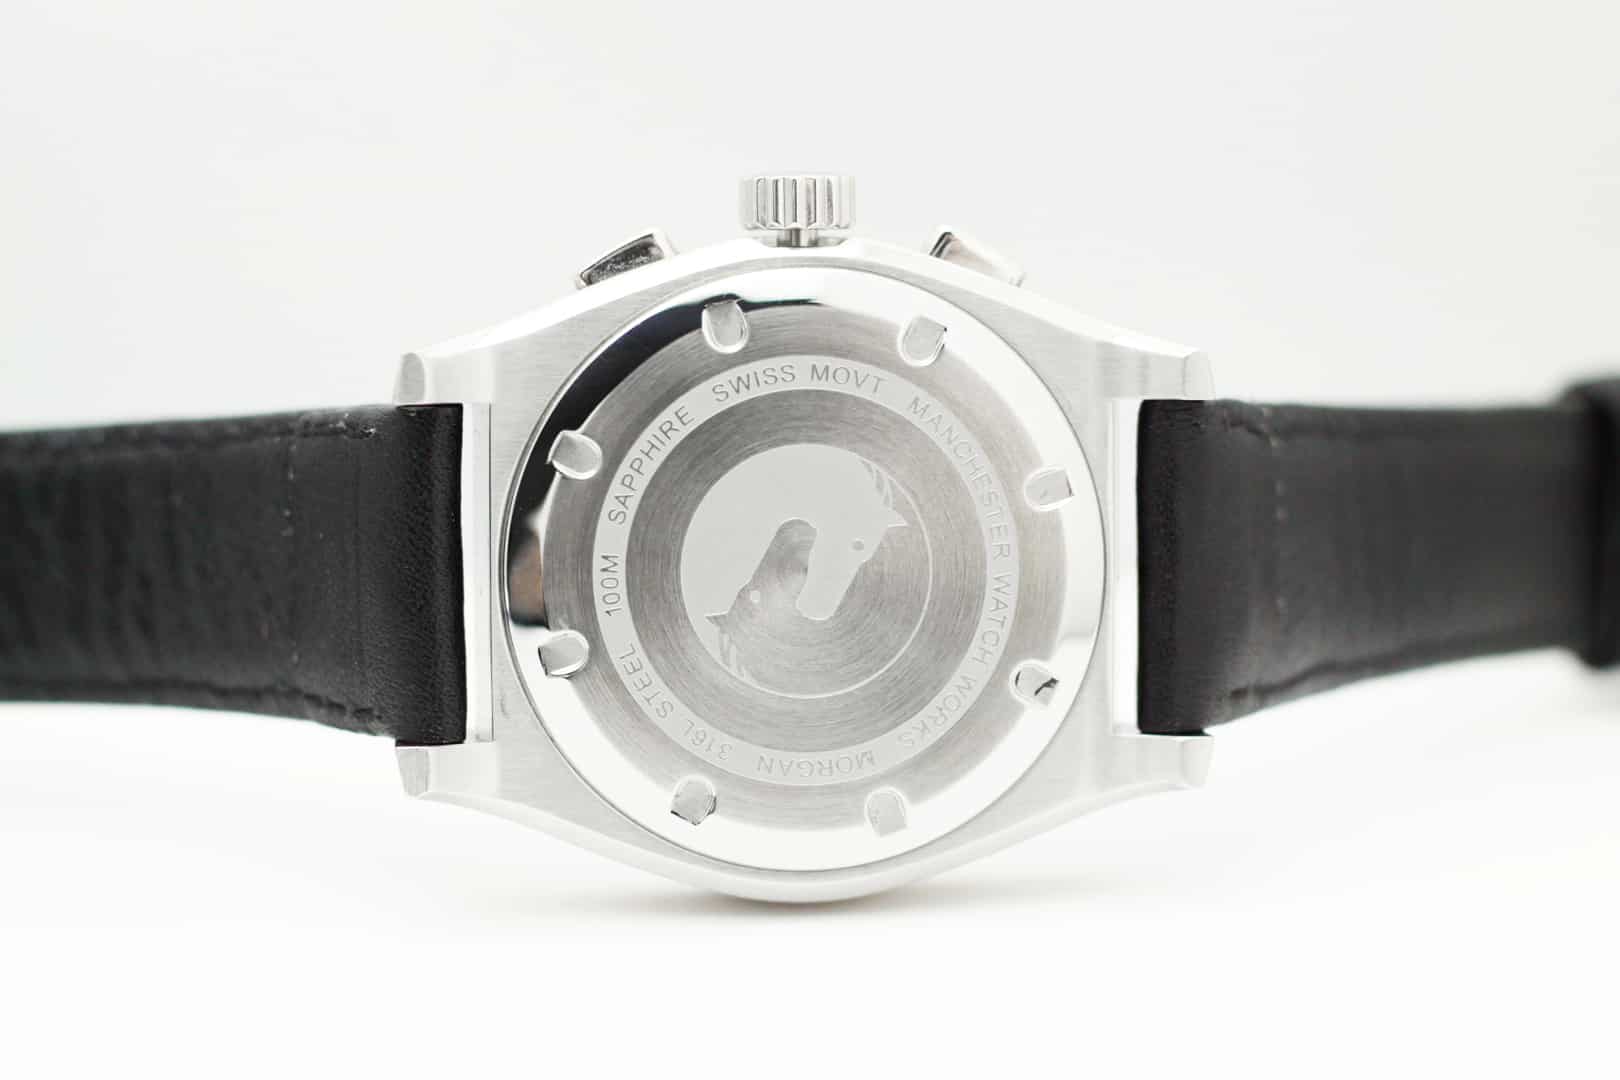 On Kickstarter: Manchester Watch Works Morgan Chronograph - Worn & Wound